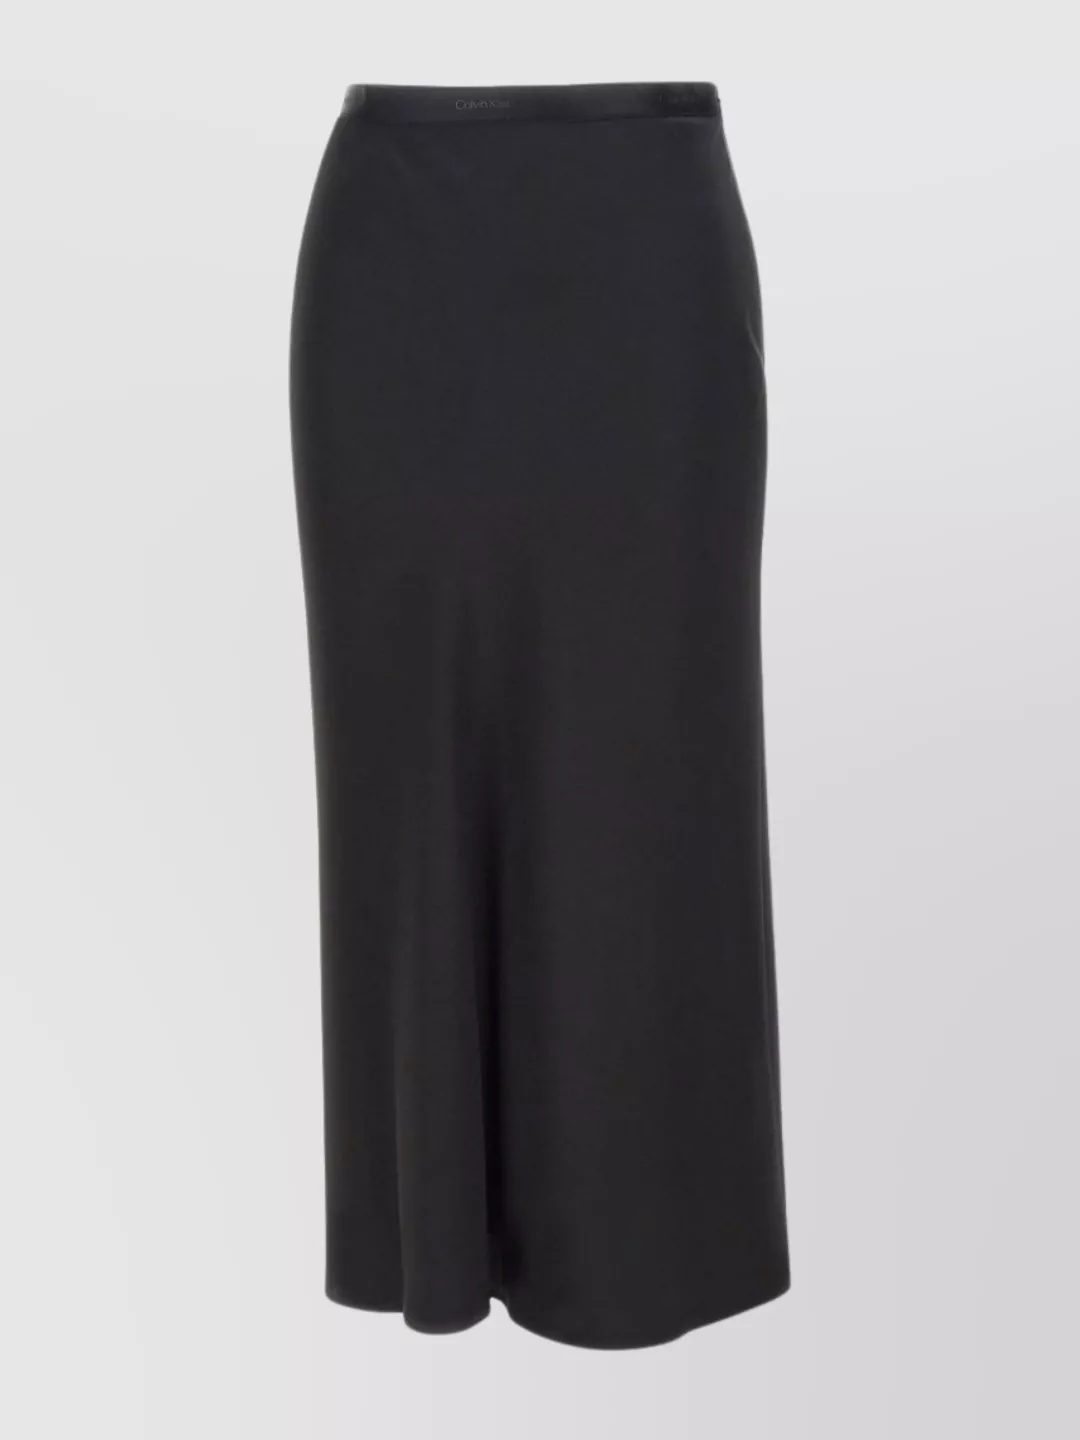 Calvin Klein Silk Skirt Bias Cut Midi Length In Black